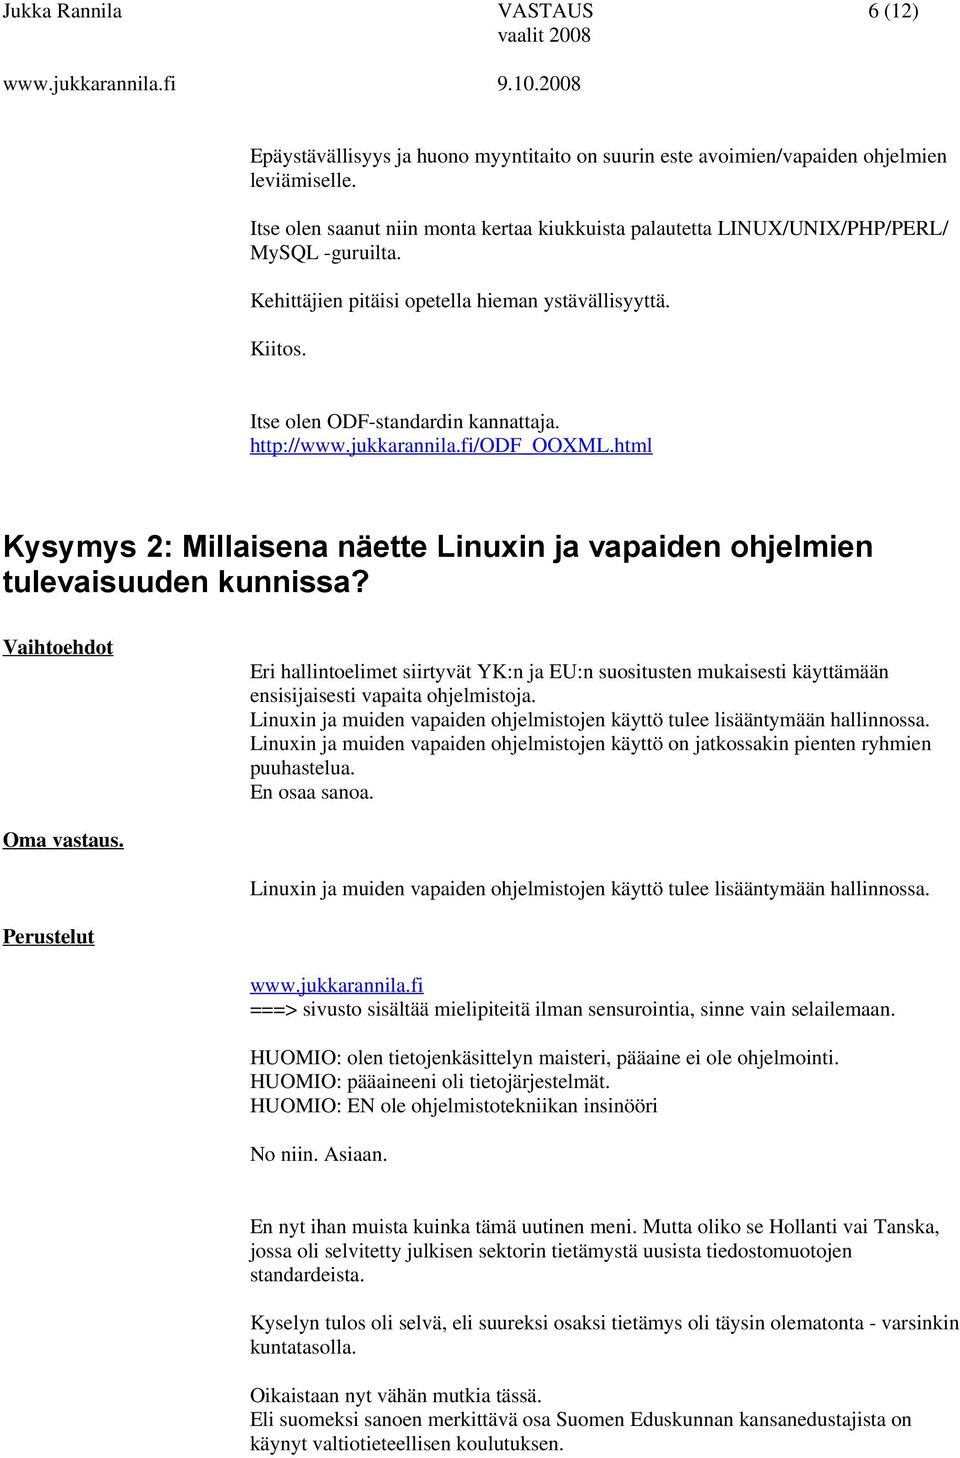 http://www.jukkarannila.fi/odf_ooxml.html Kysymys 2: Millaisena näette Linuxin ja vapaiden ohjelmien tulevaisuuden kunnissa?